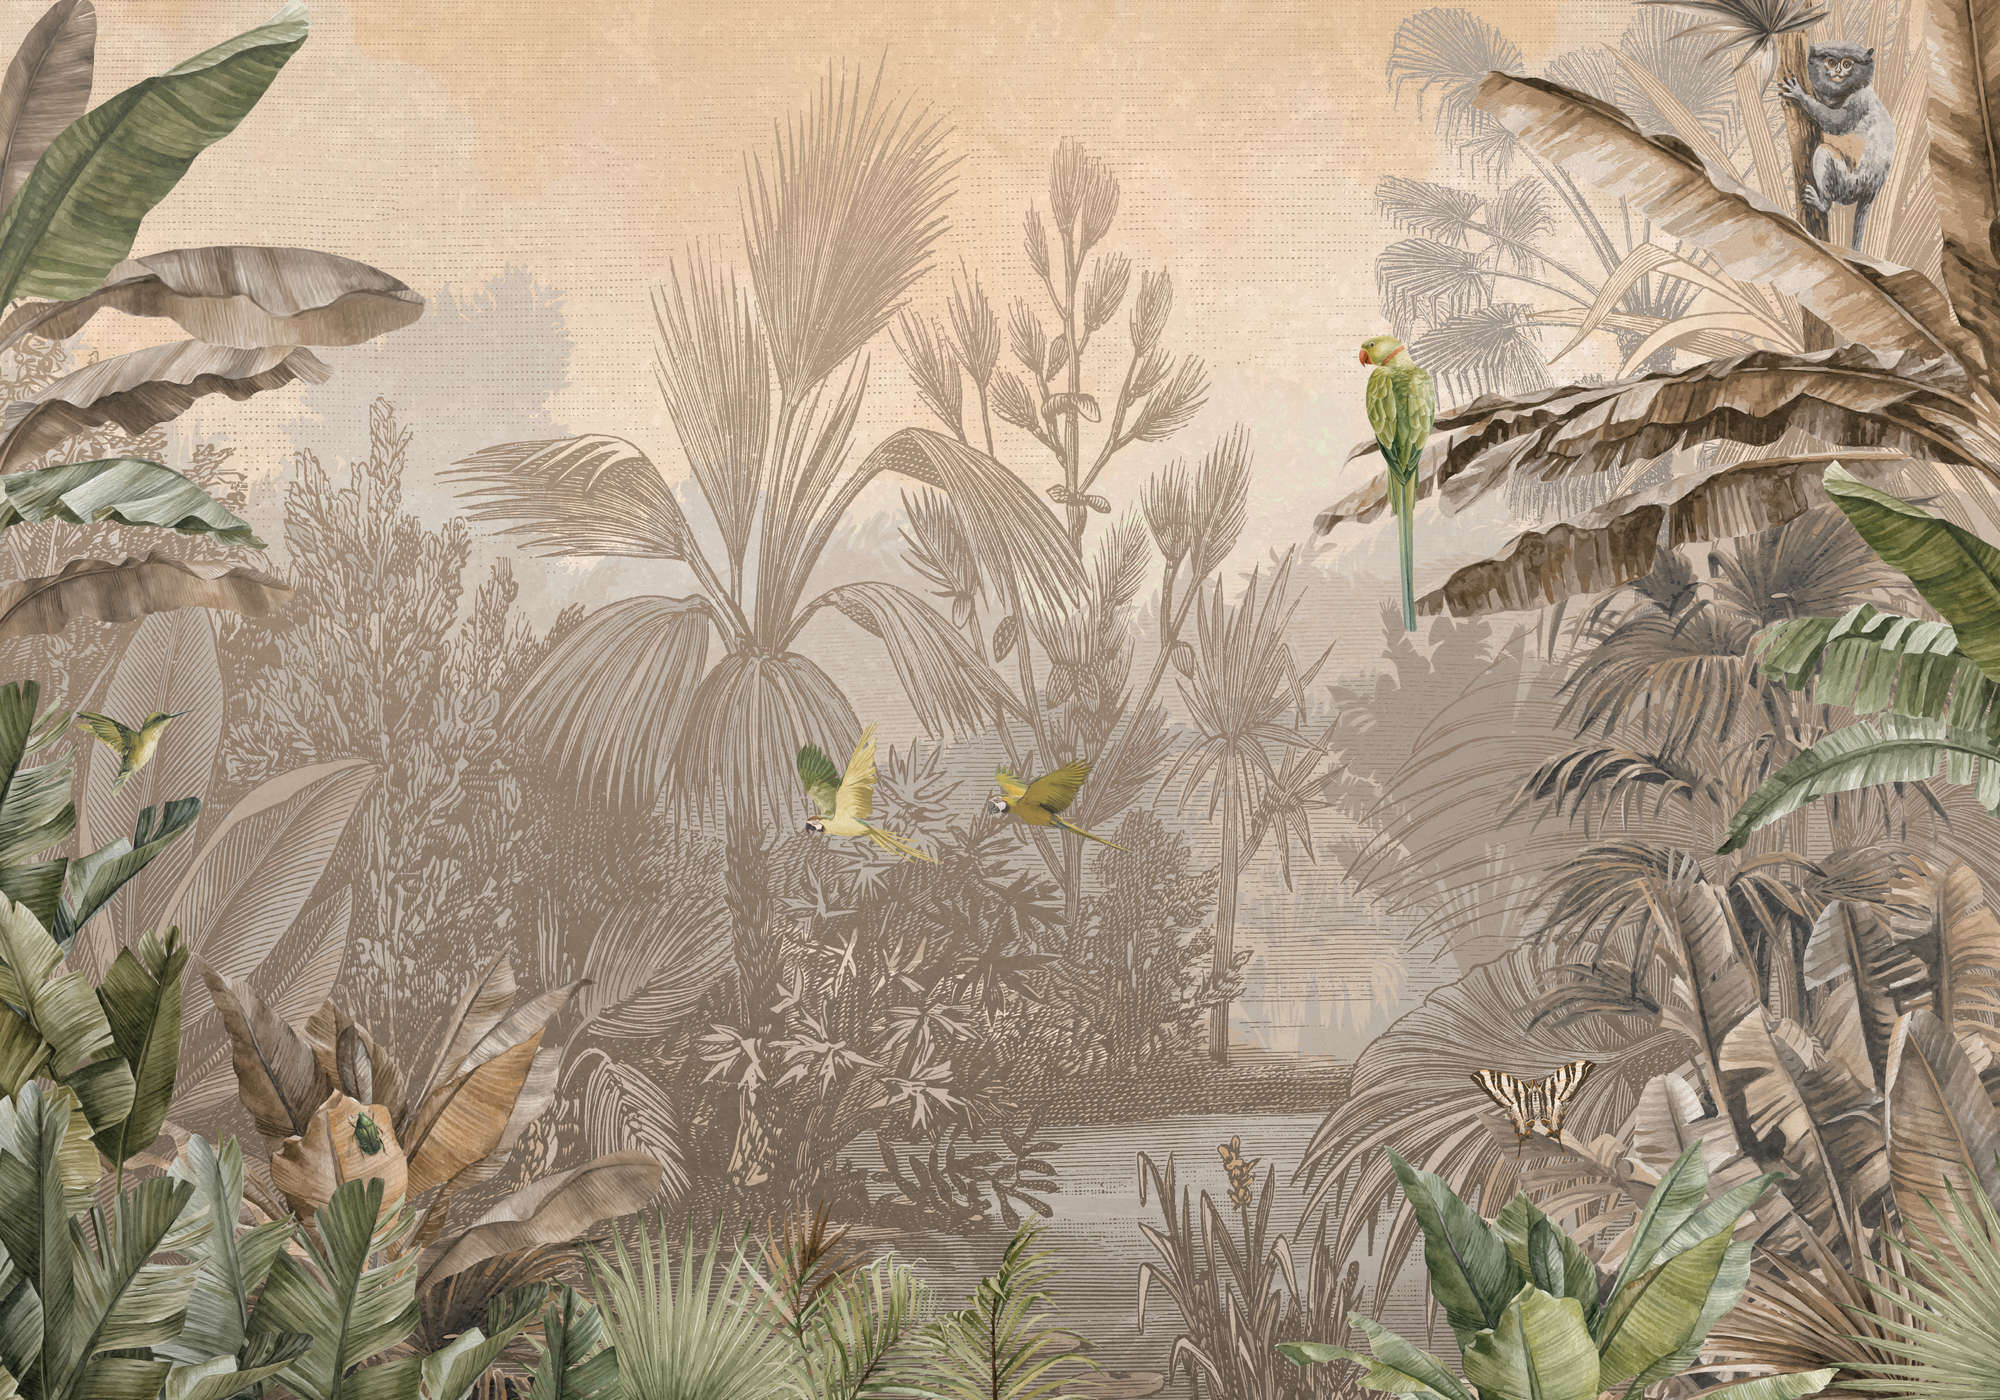             Jungle muurschildering bruin-groen in tekenstijl
        